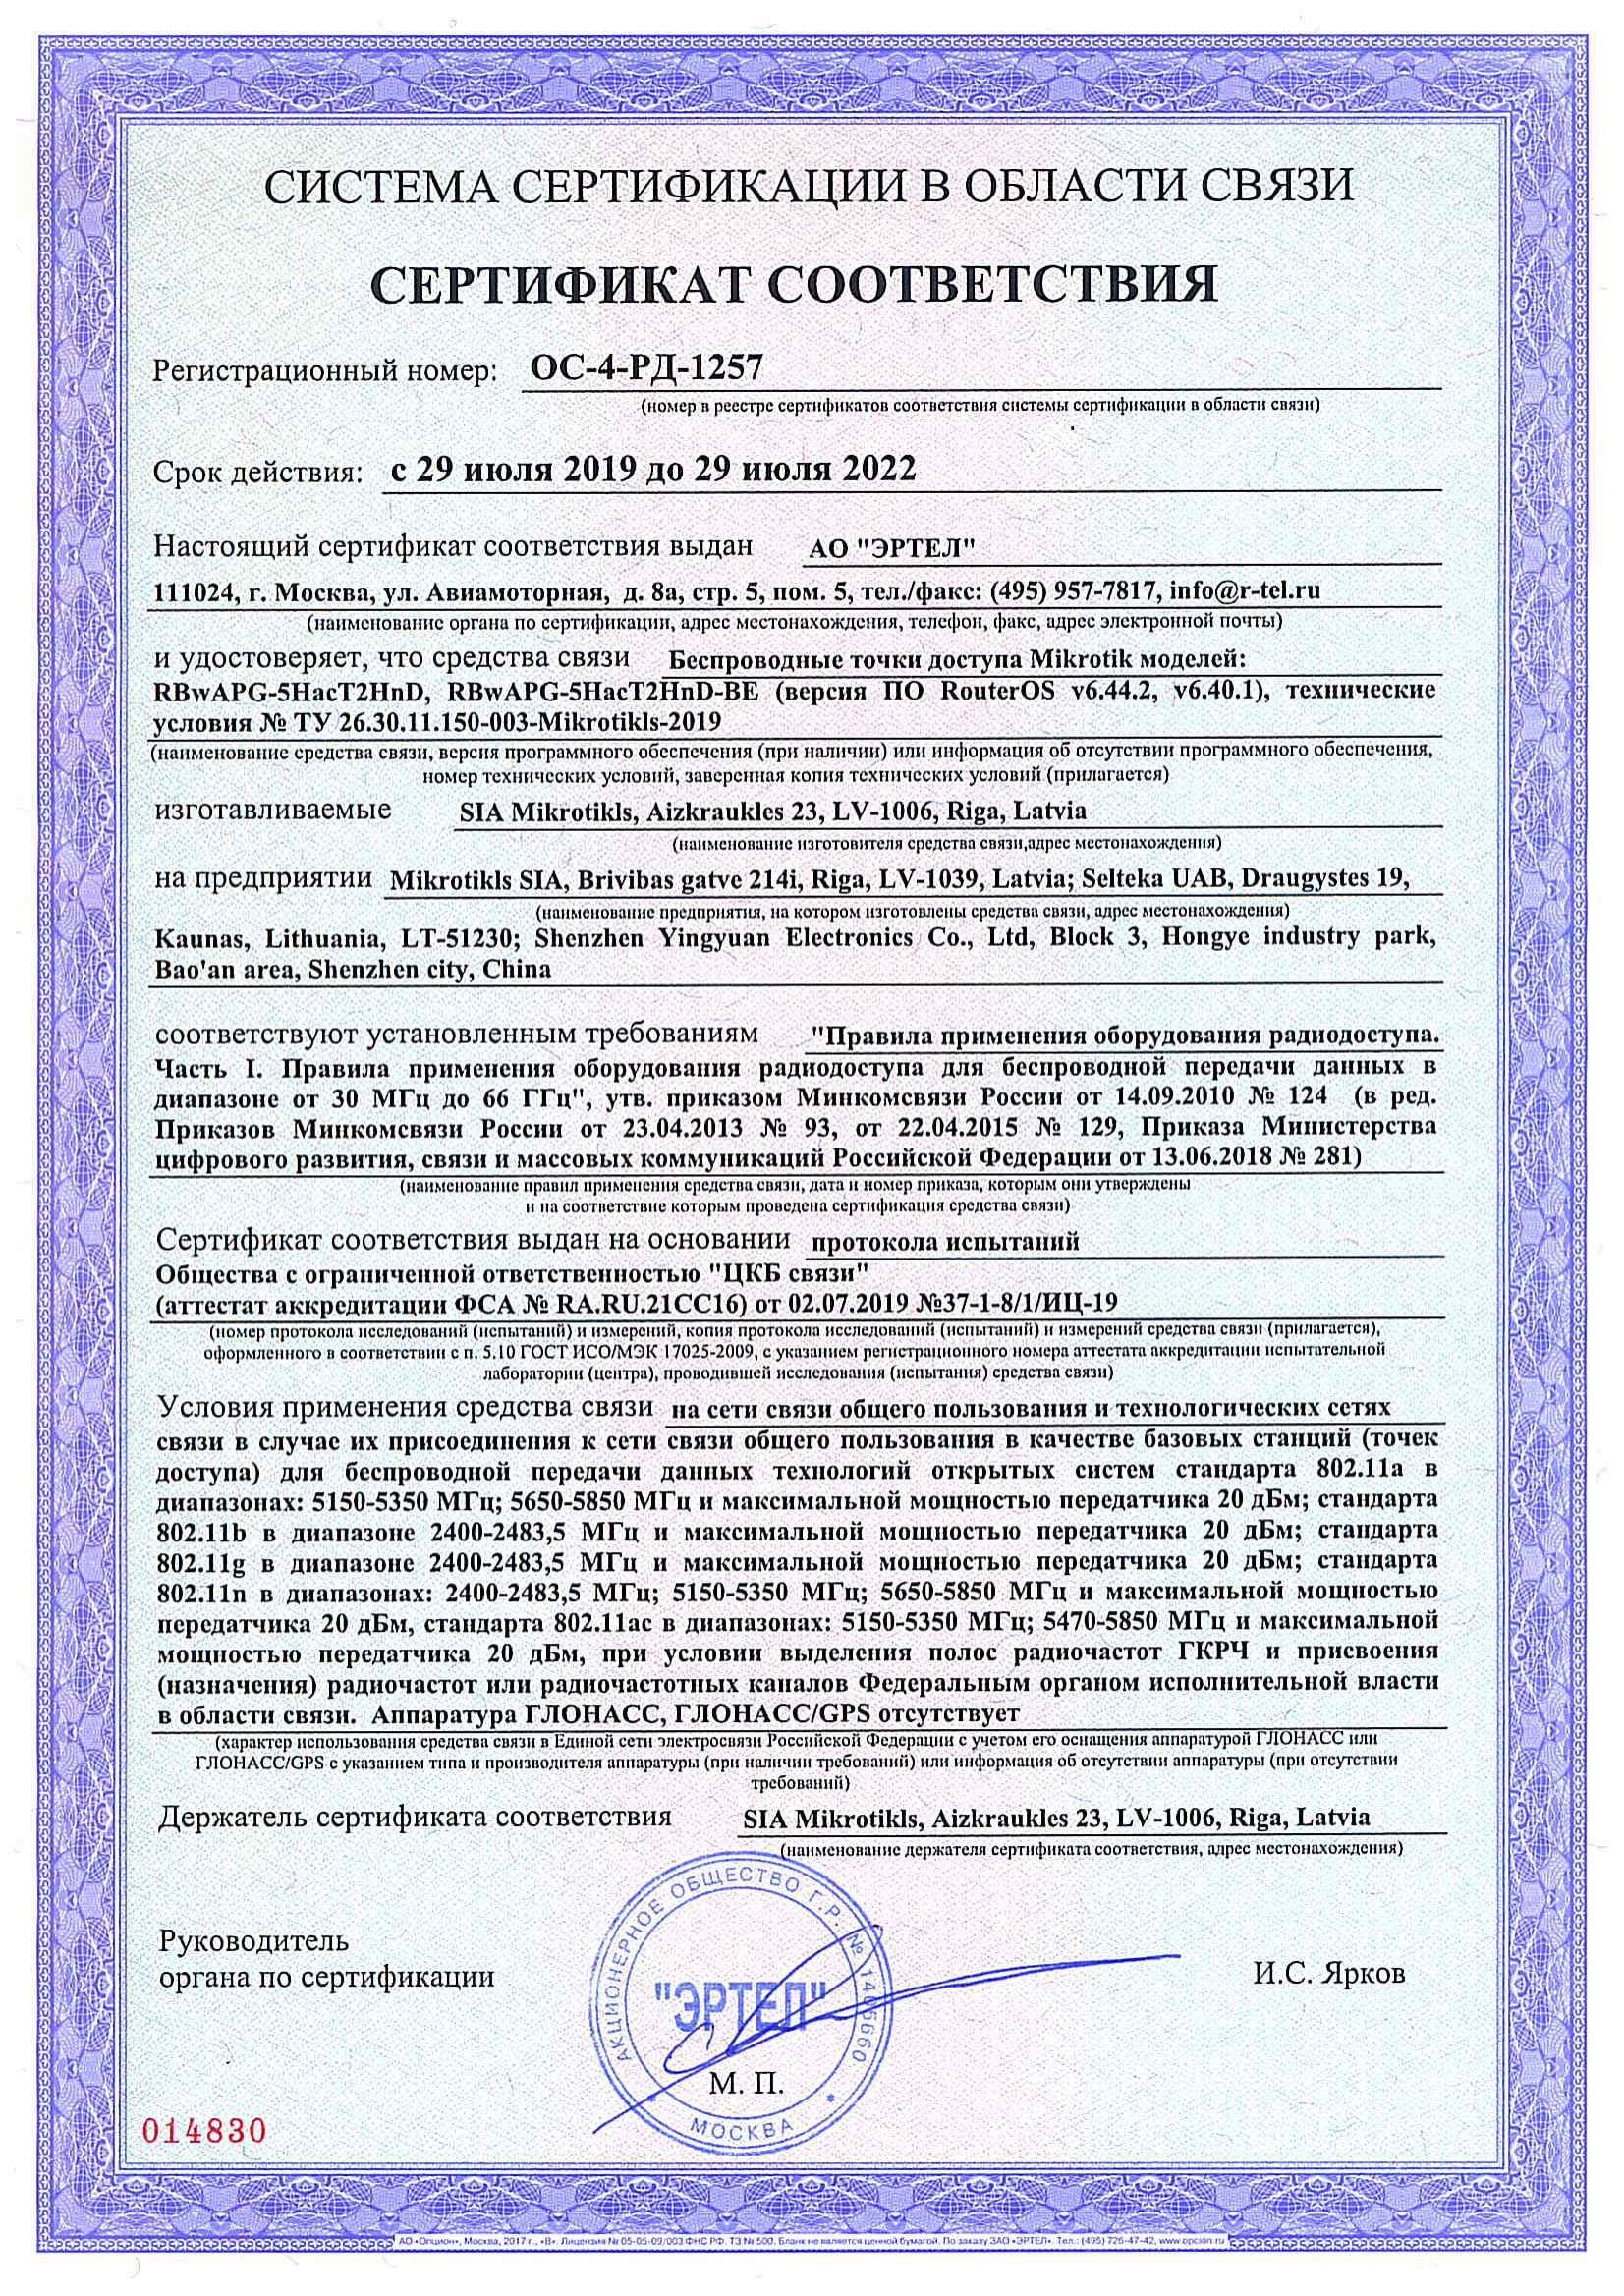 Сертификат соответствия в области связи ОС-4-РД-1257